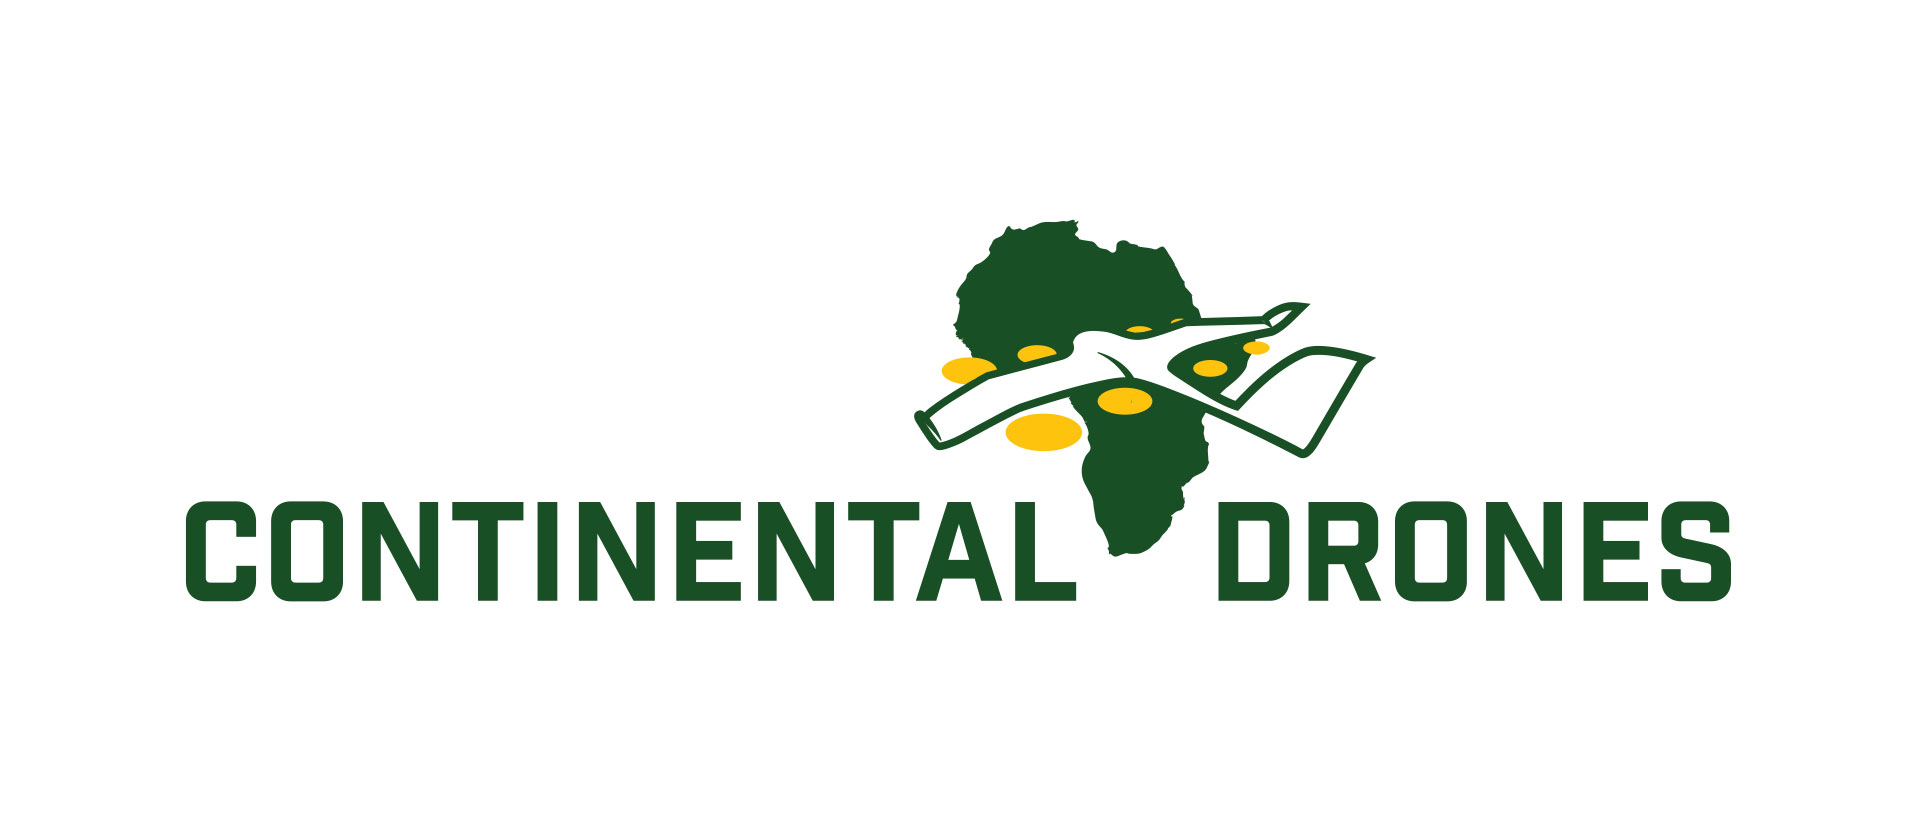 continental-drones-logo